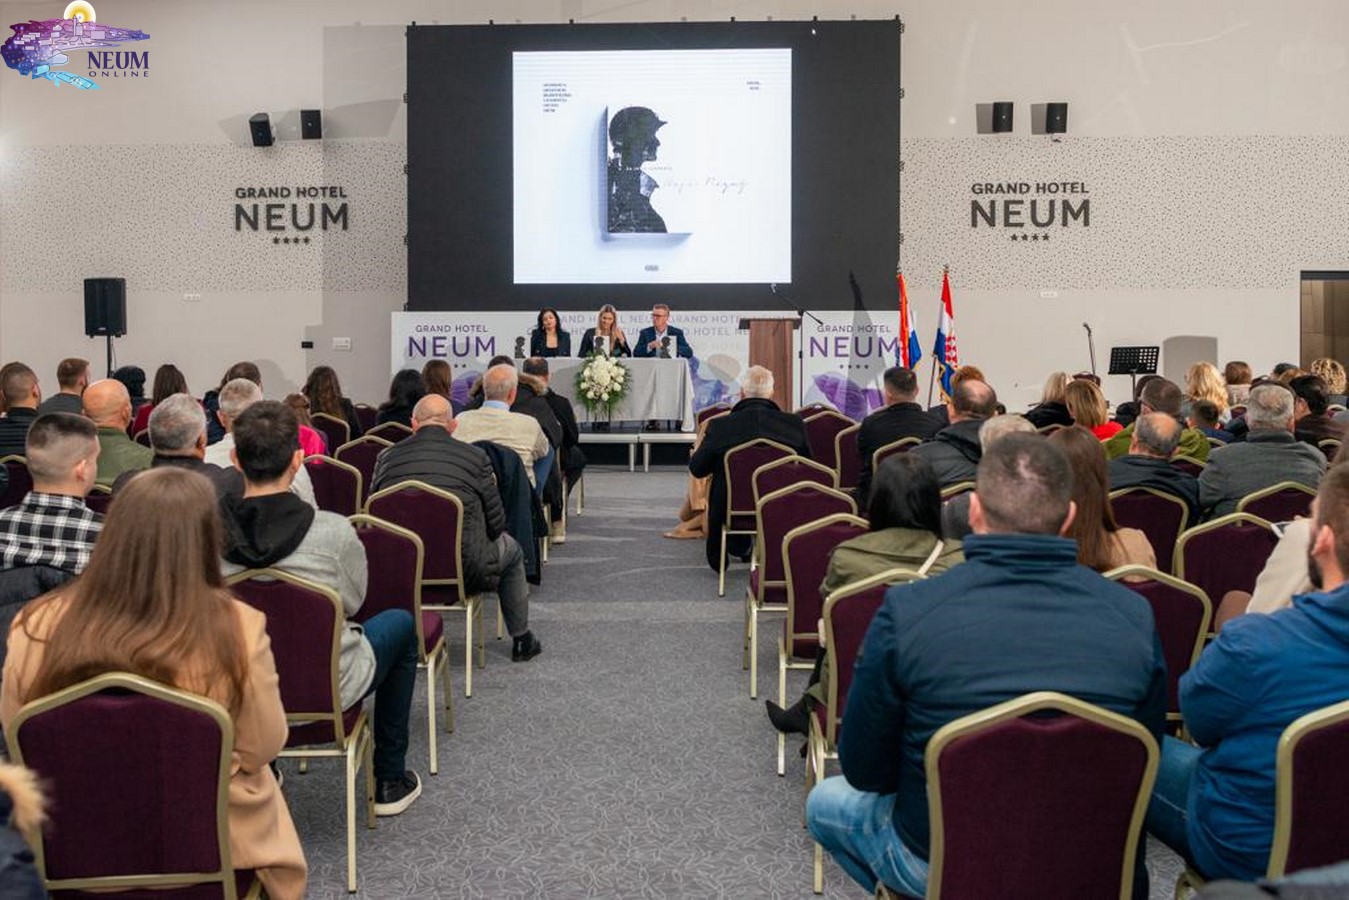 FOTO | U prepunoj dvorani u Neumu održana promocija knjige “Da se ne zaborave” mlade autorice Maje Raguž